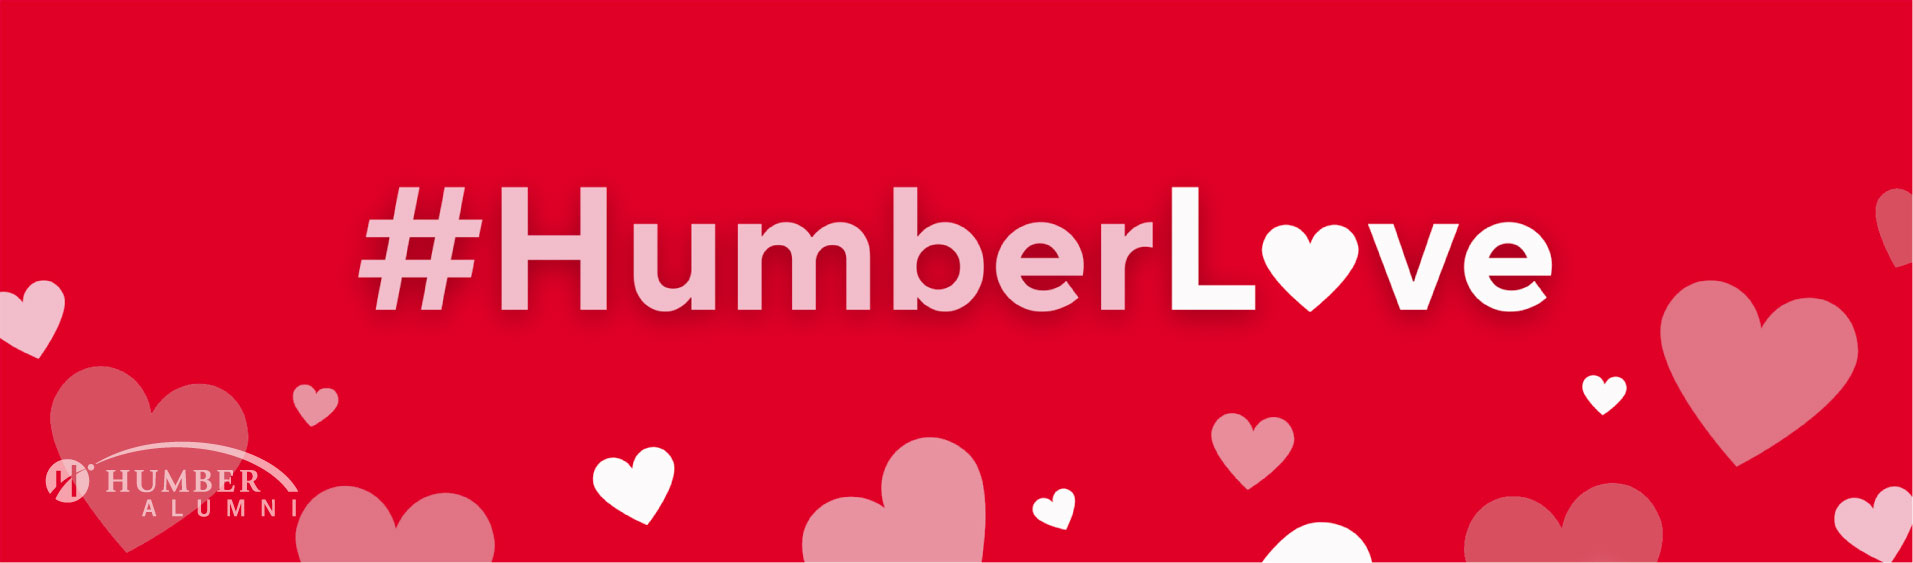 #HumberLove Hearts